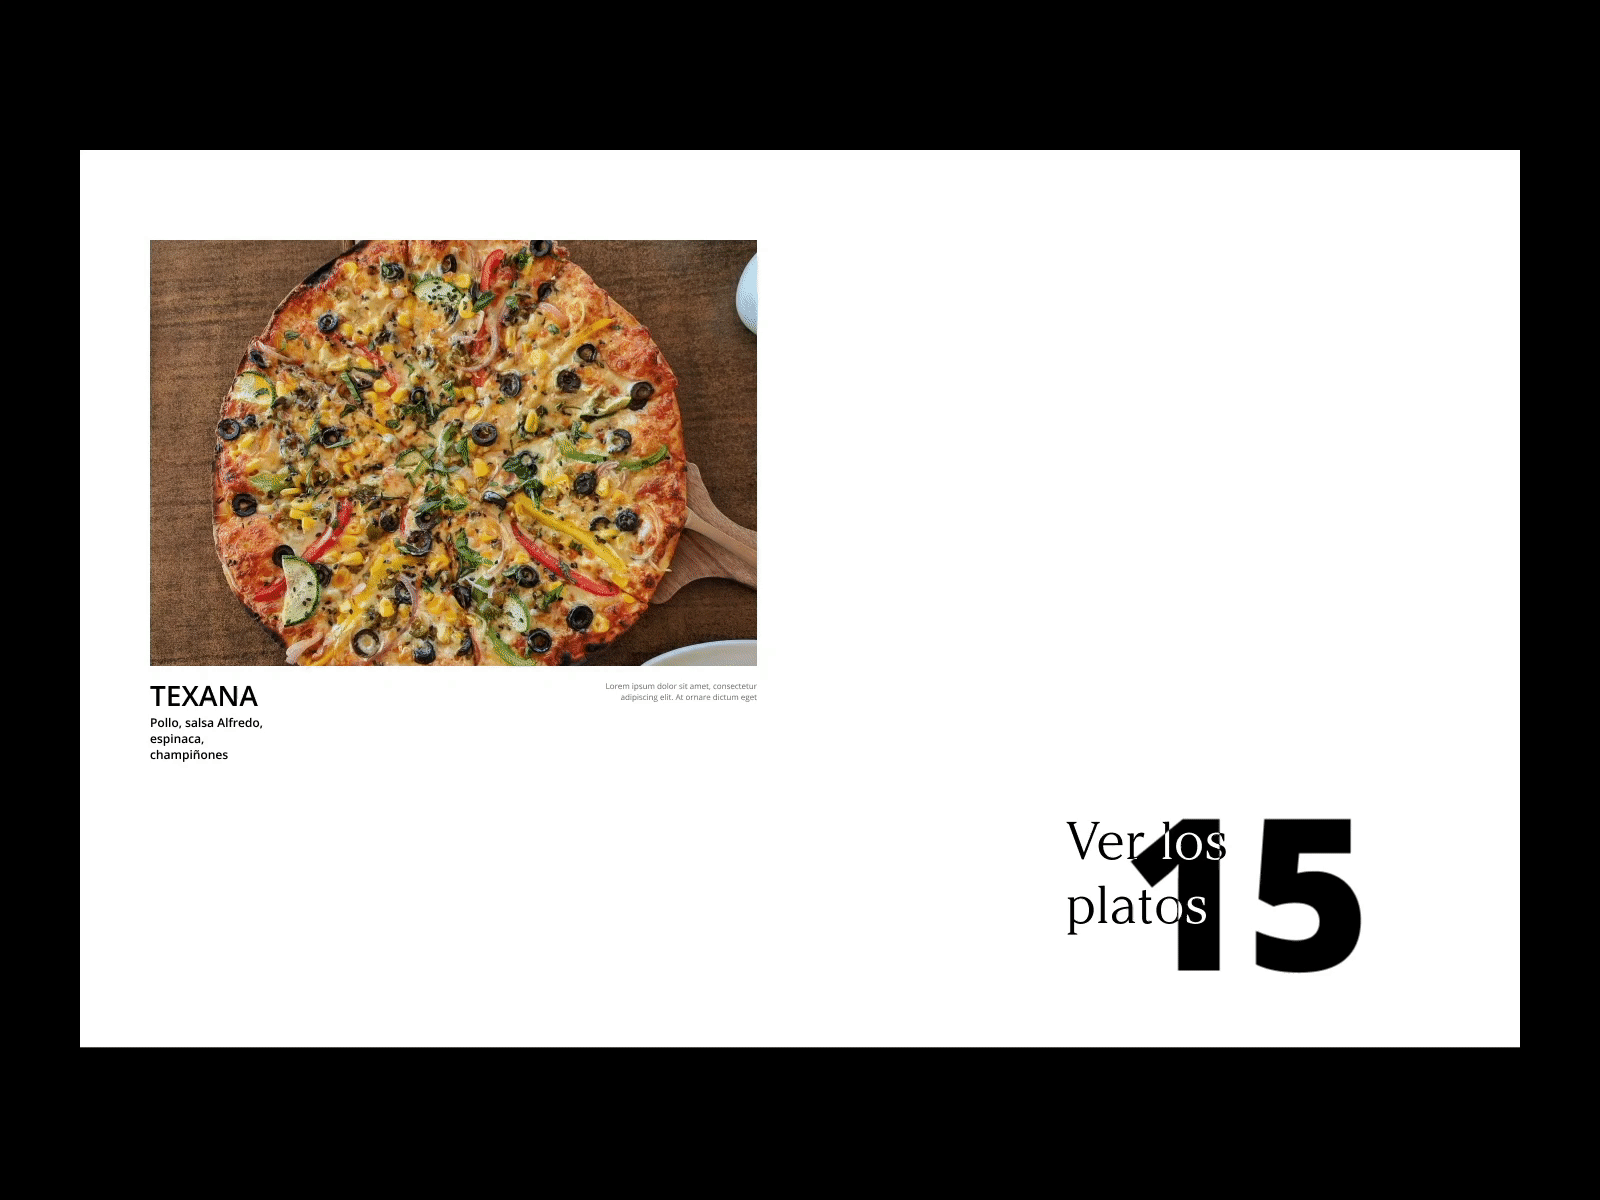 Figgaro's pizza website